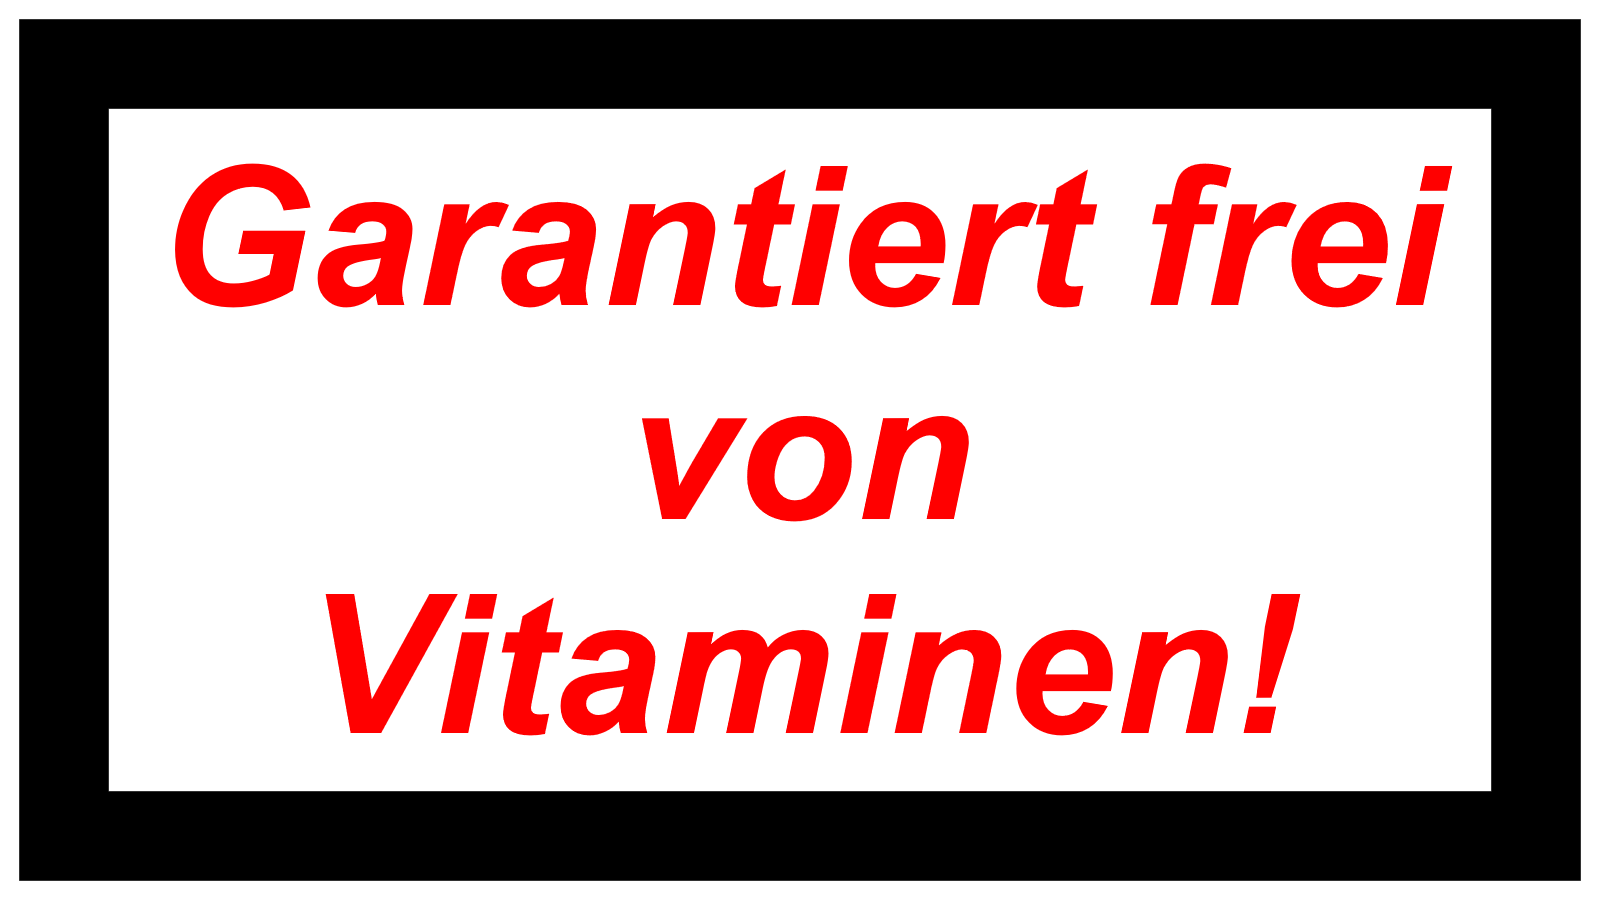 Garantiert frei von Vitaminen!